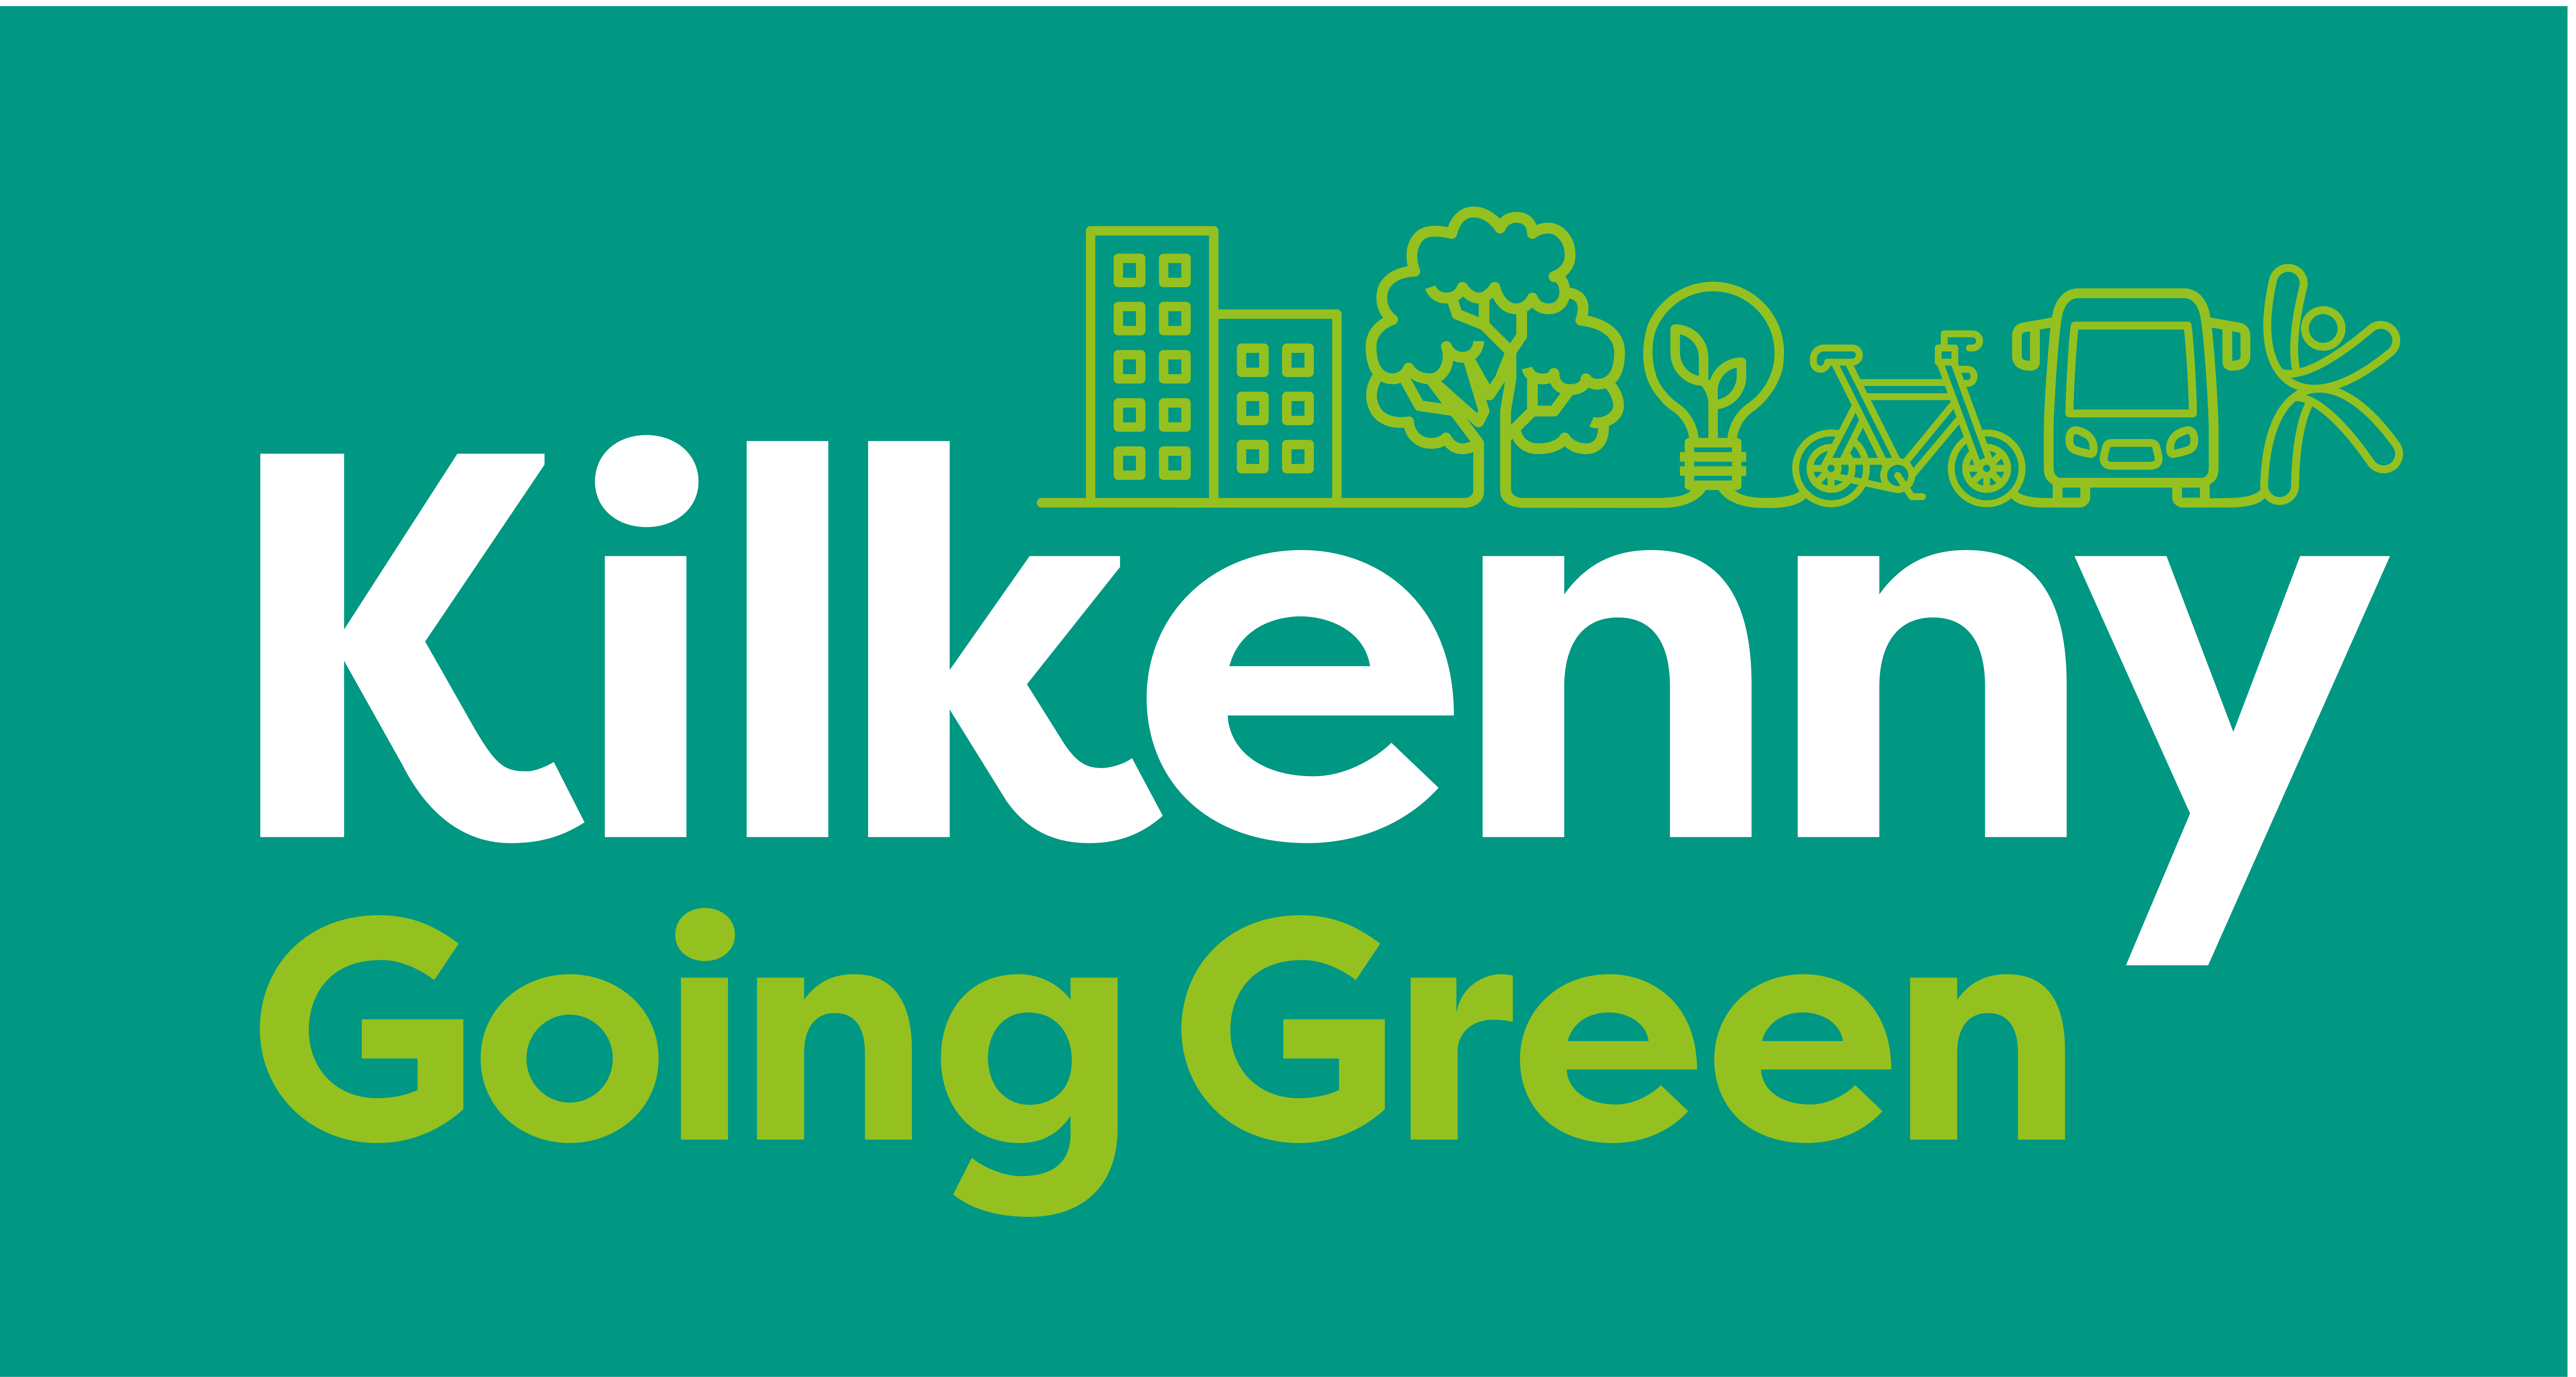 Kilkenny-Going-Green_main-brand-color-reversed